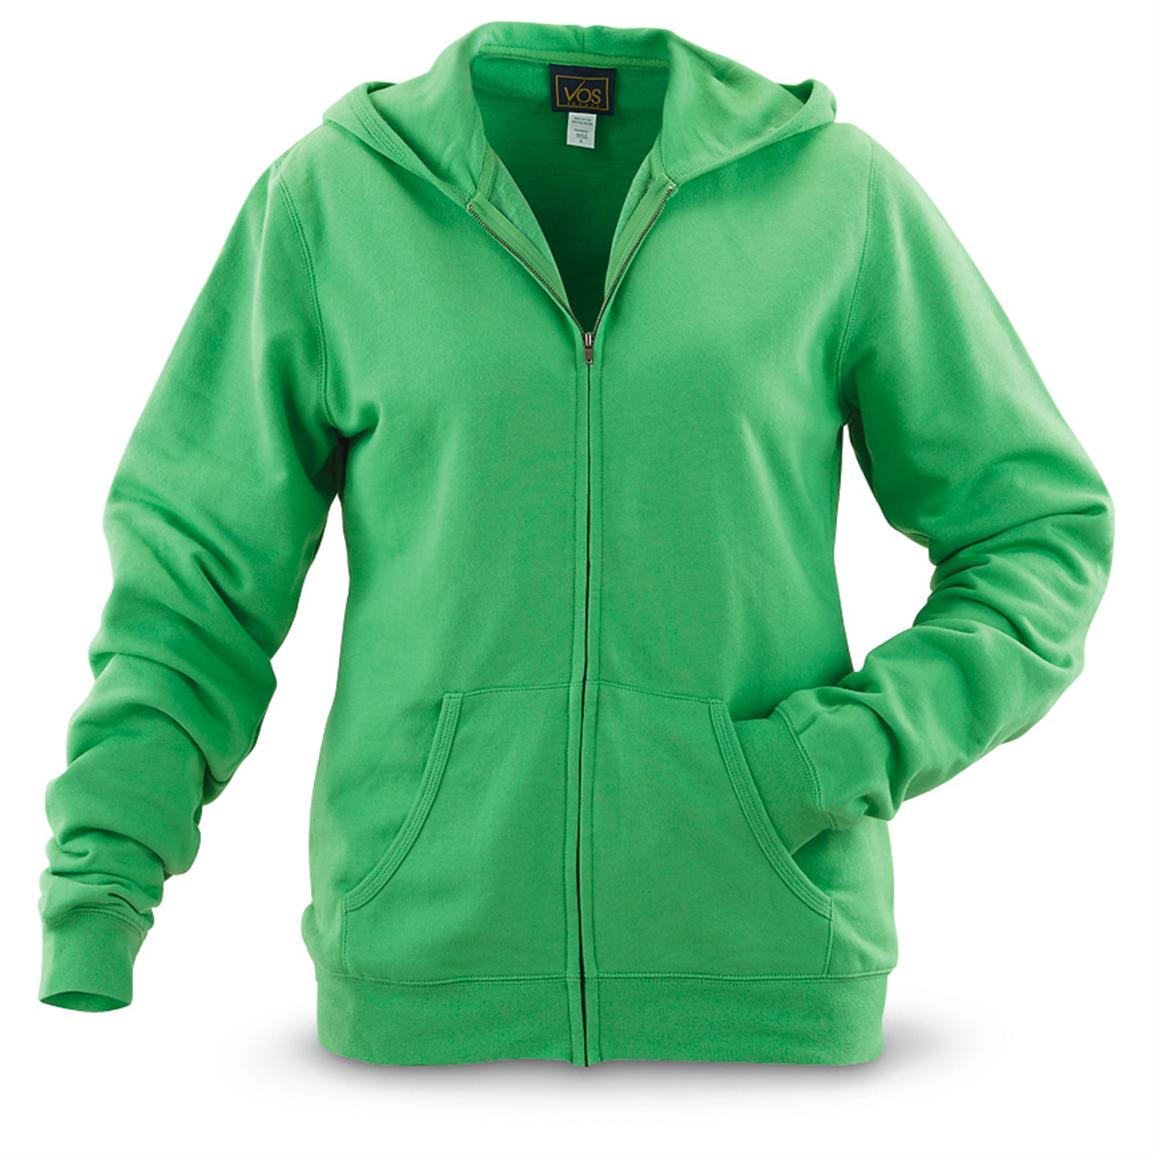 2 Women's Vos Sports® Full-zip Fleece Hoodies - 424419, Sweatshirts ...